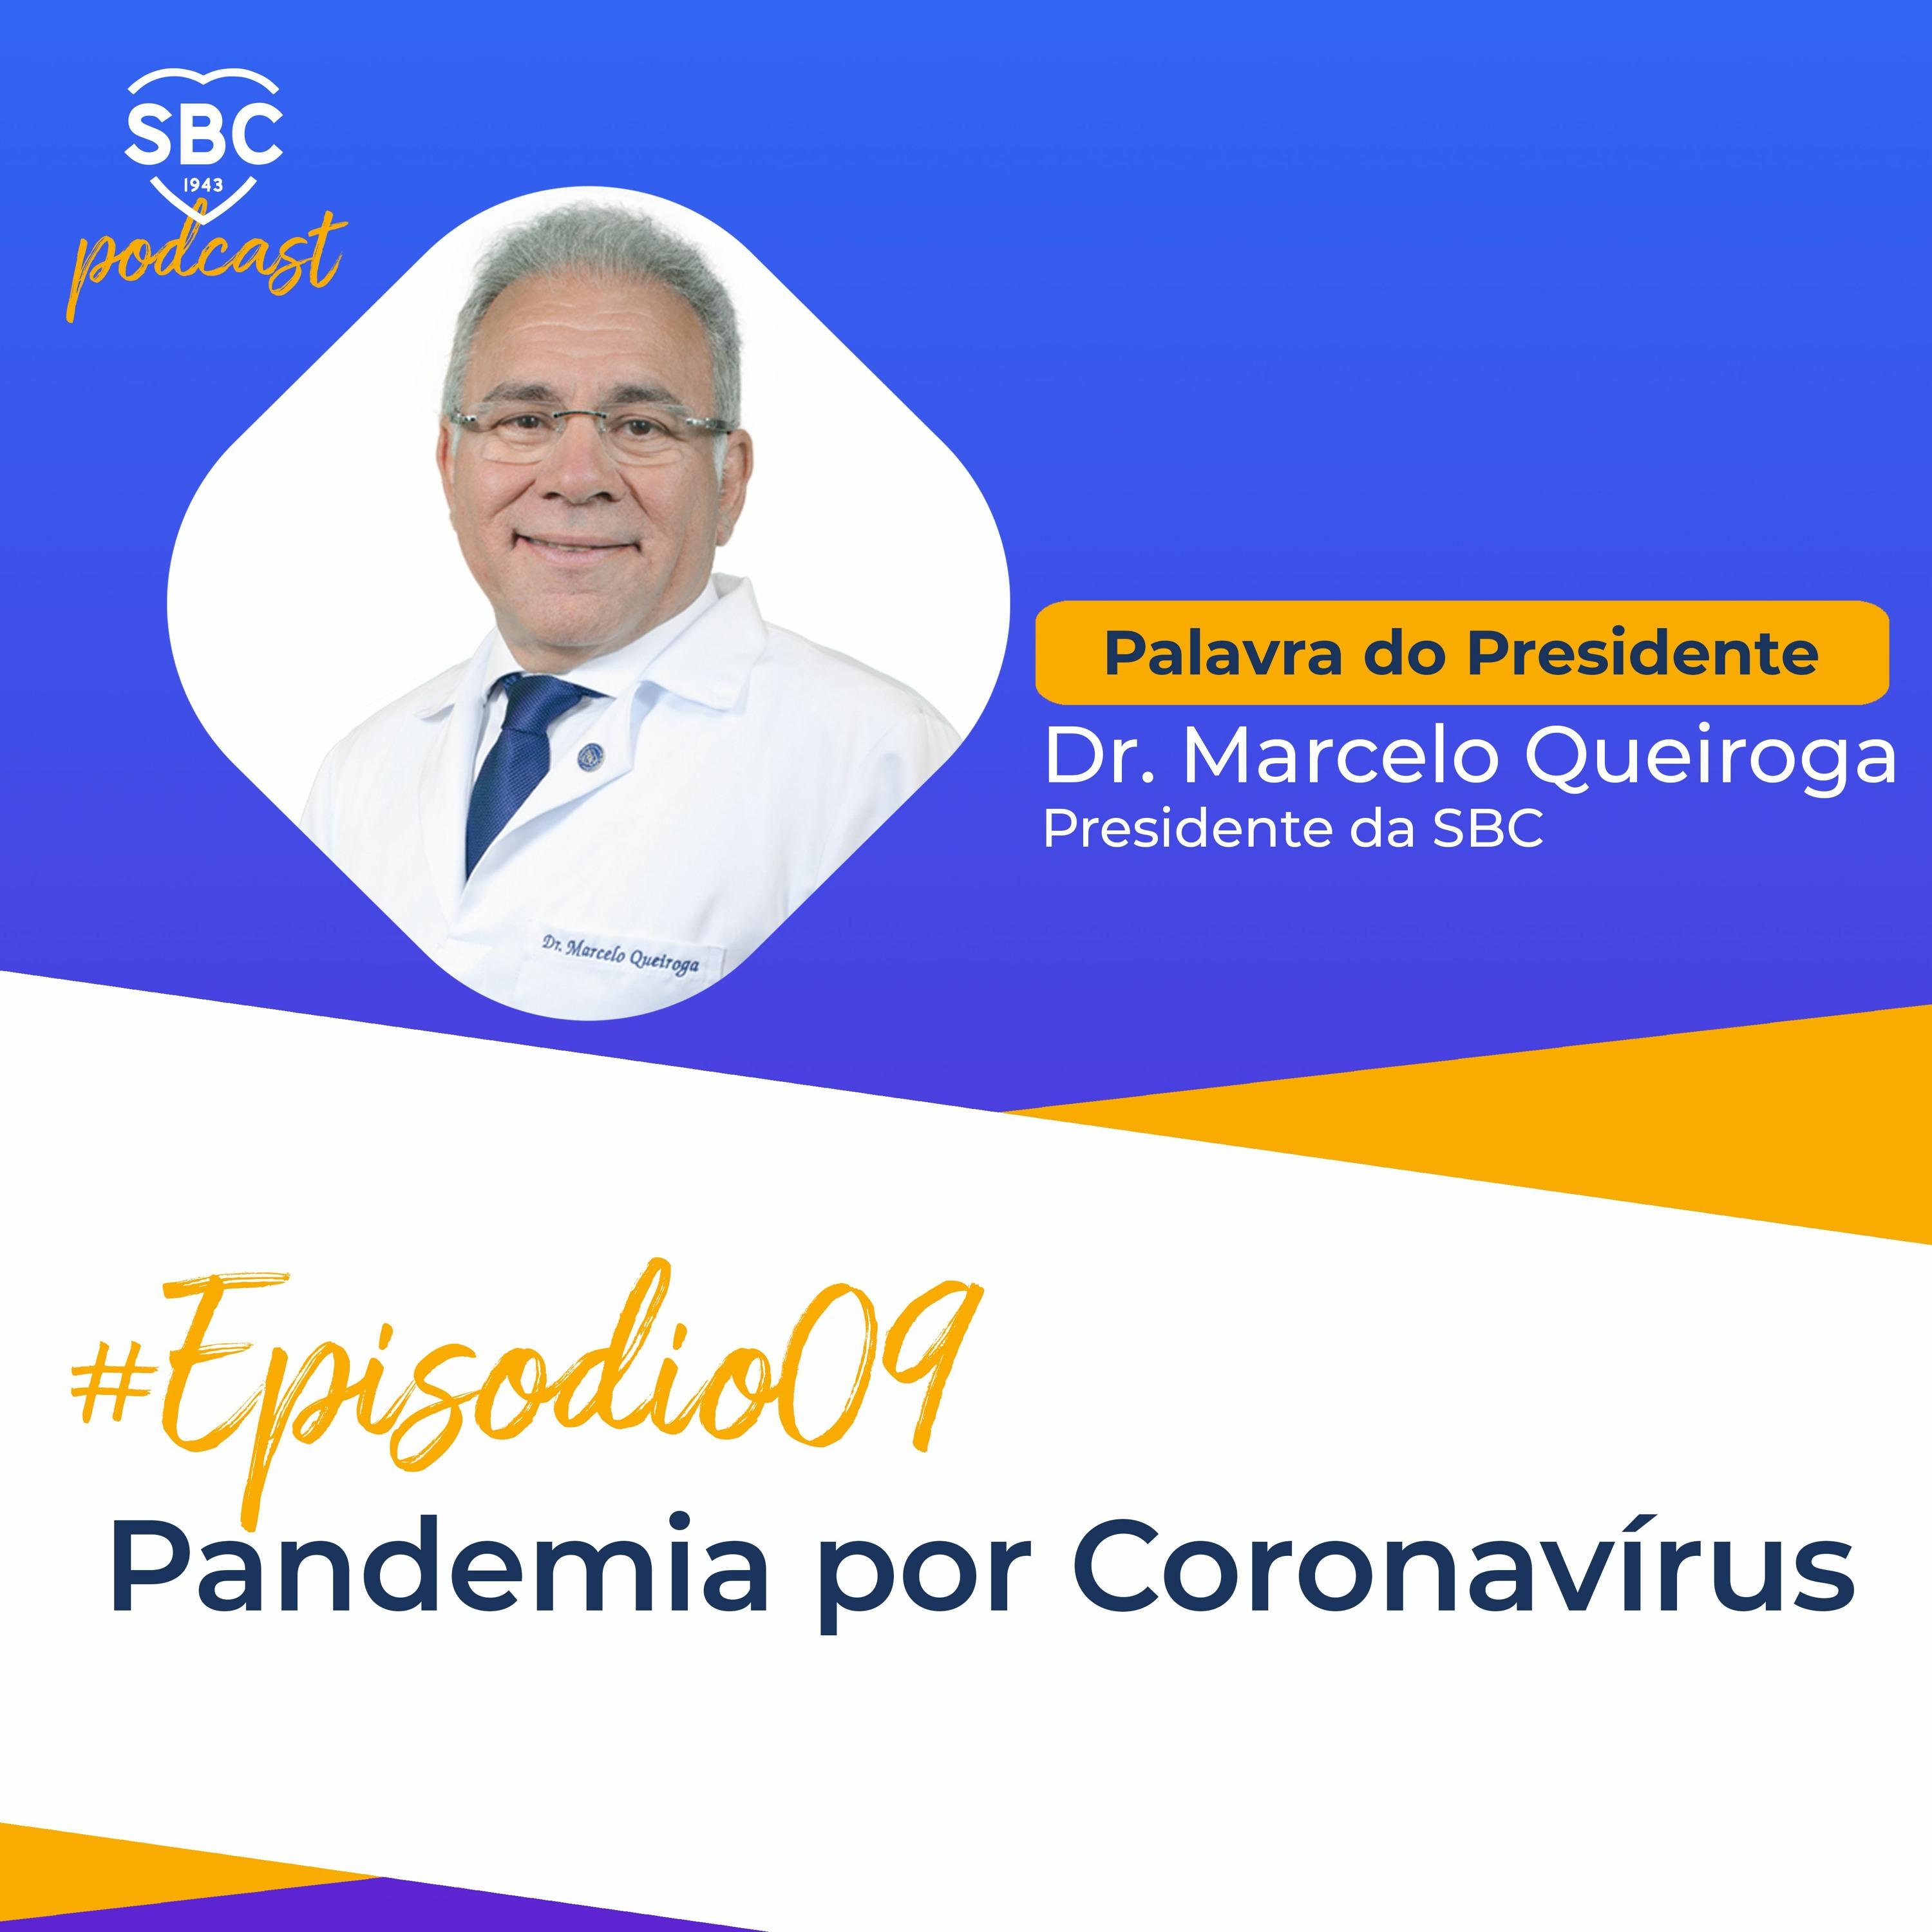 Neste episódio, o Dr. Marcelo Queiroga comenta um pouco a respeito da pandemia por Coronavírus e quais as suas consequências para os portadores de doenças cardiovasculares.